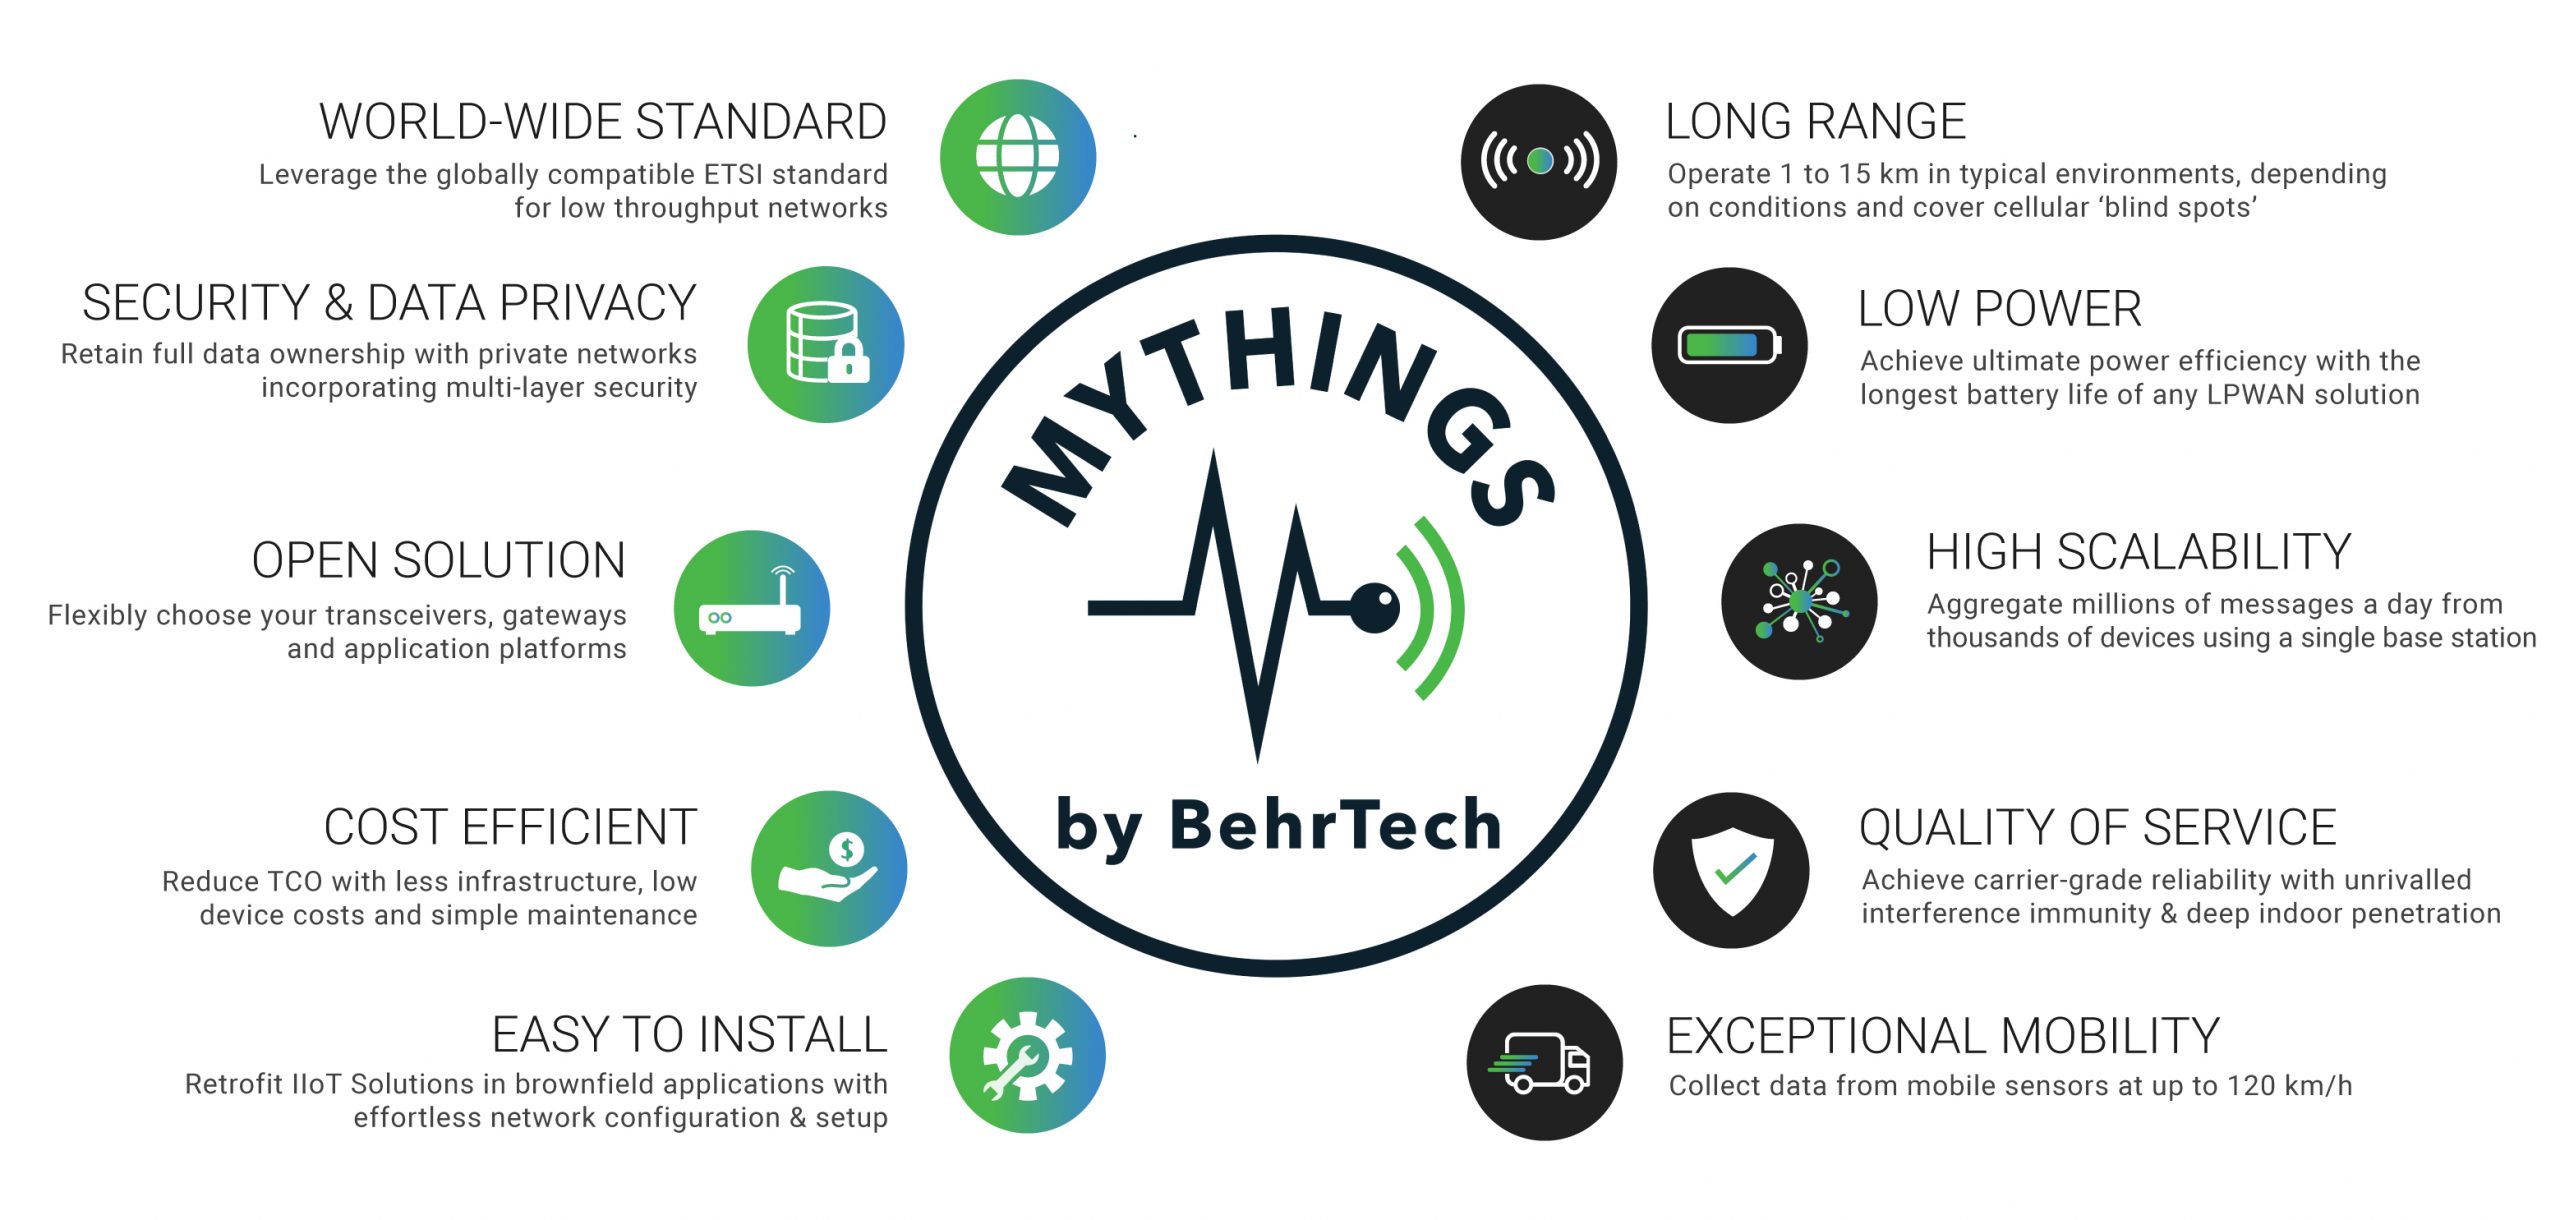 BehrTech Partners